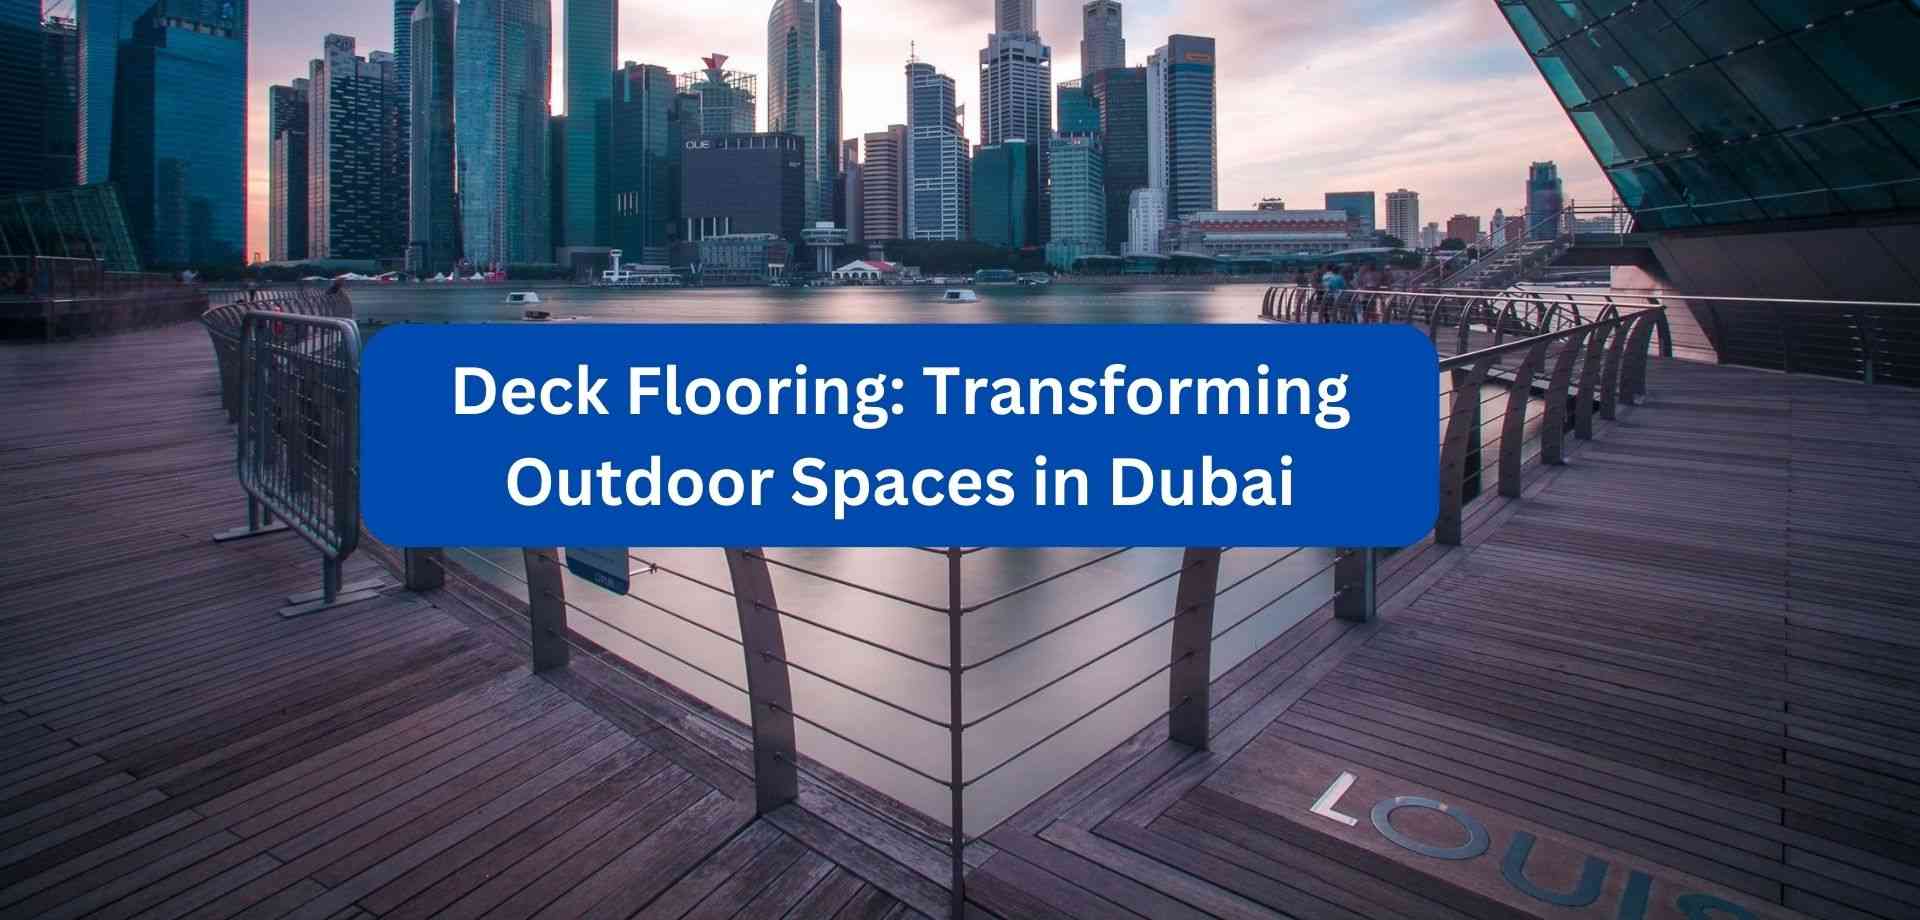 Deck flooring in UAE